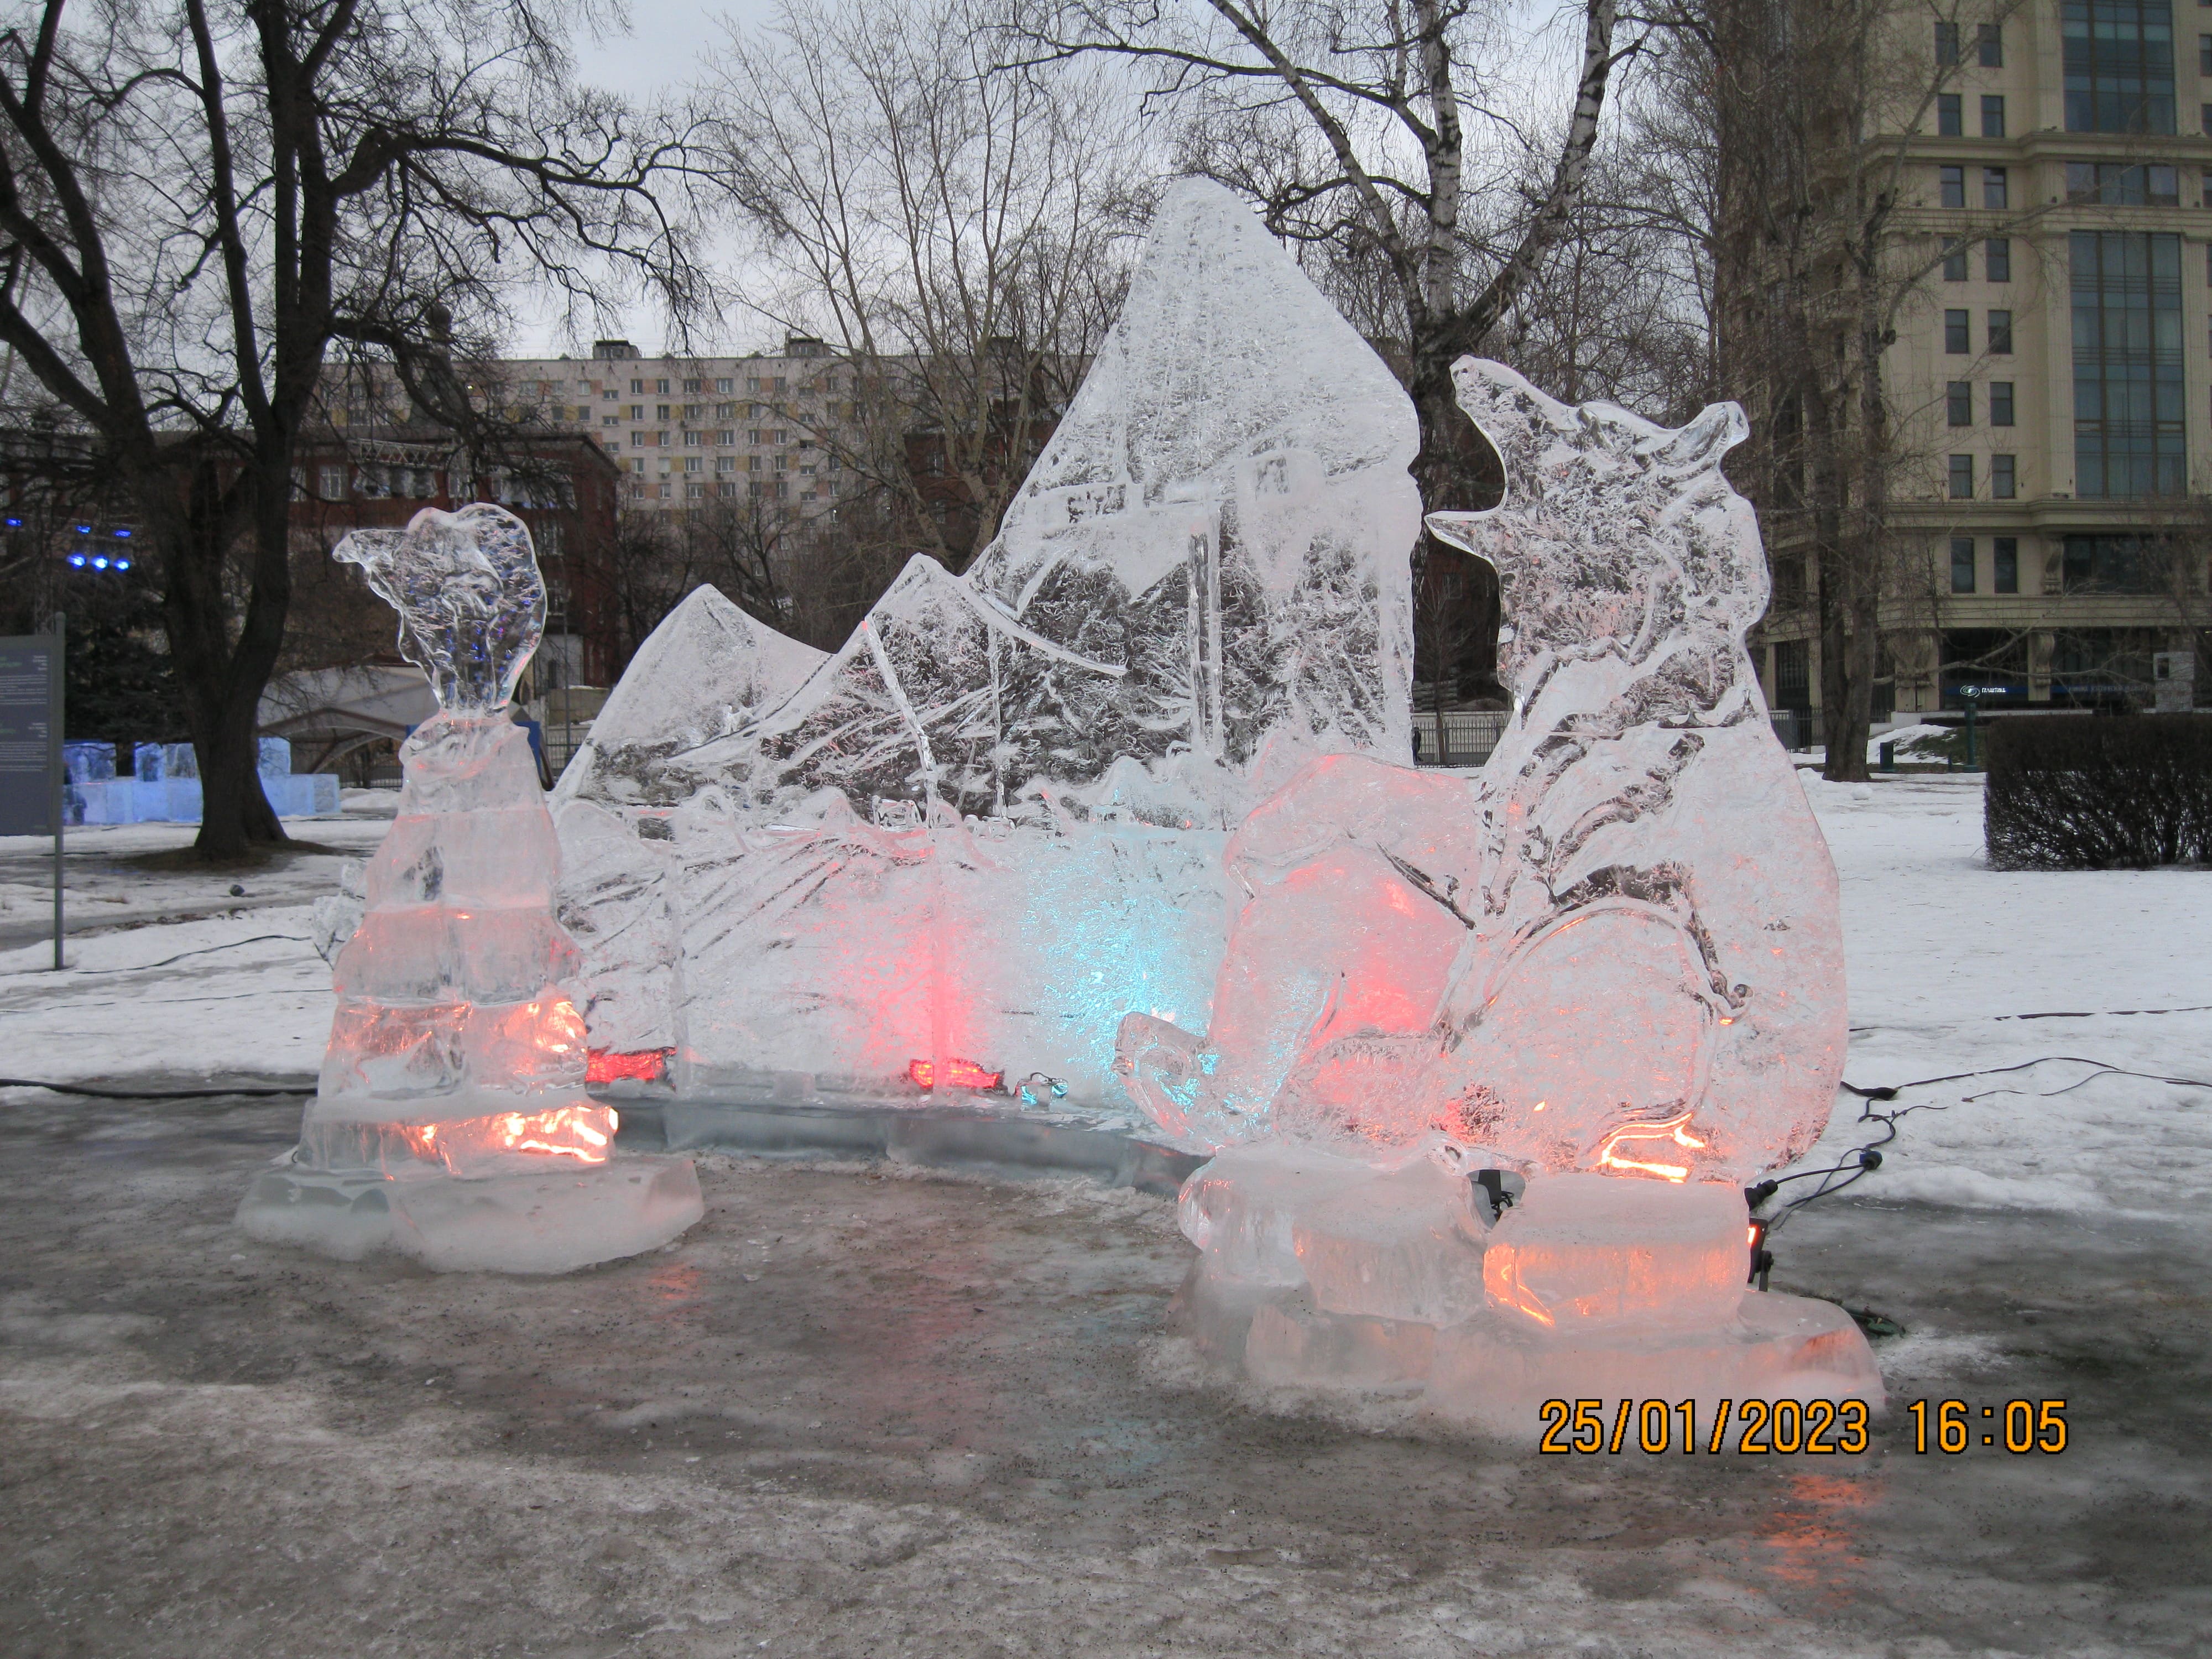 Выставка ледяных скульптур в парке Музеон Москвы - "Снег и Лёд". Ледяные и снежные фигуры и скульптуры